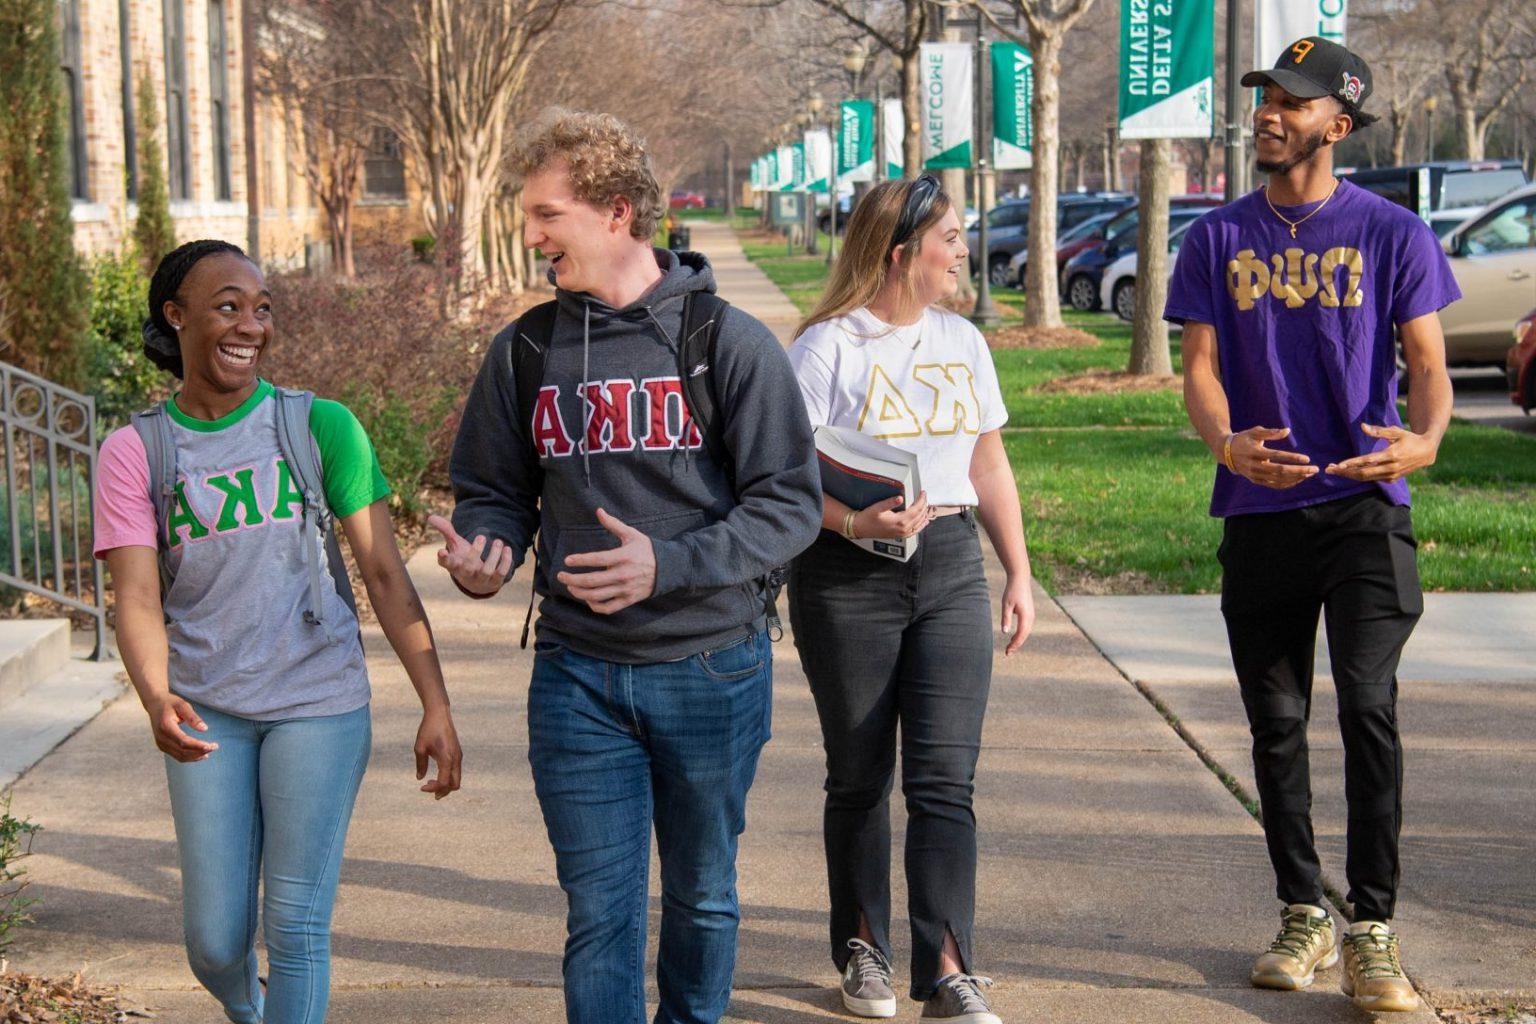 希腊的生活 students walking 和 engaging with each other on campus.